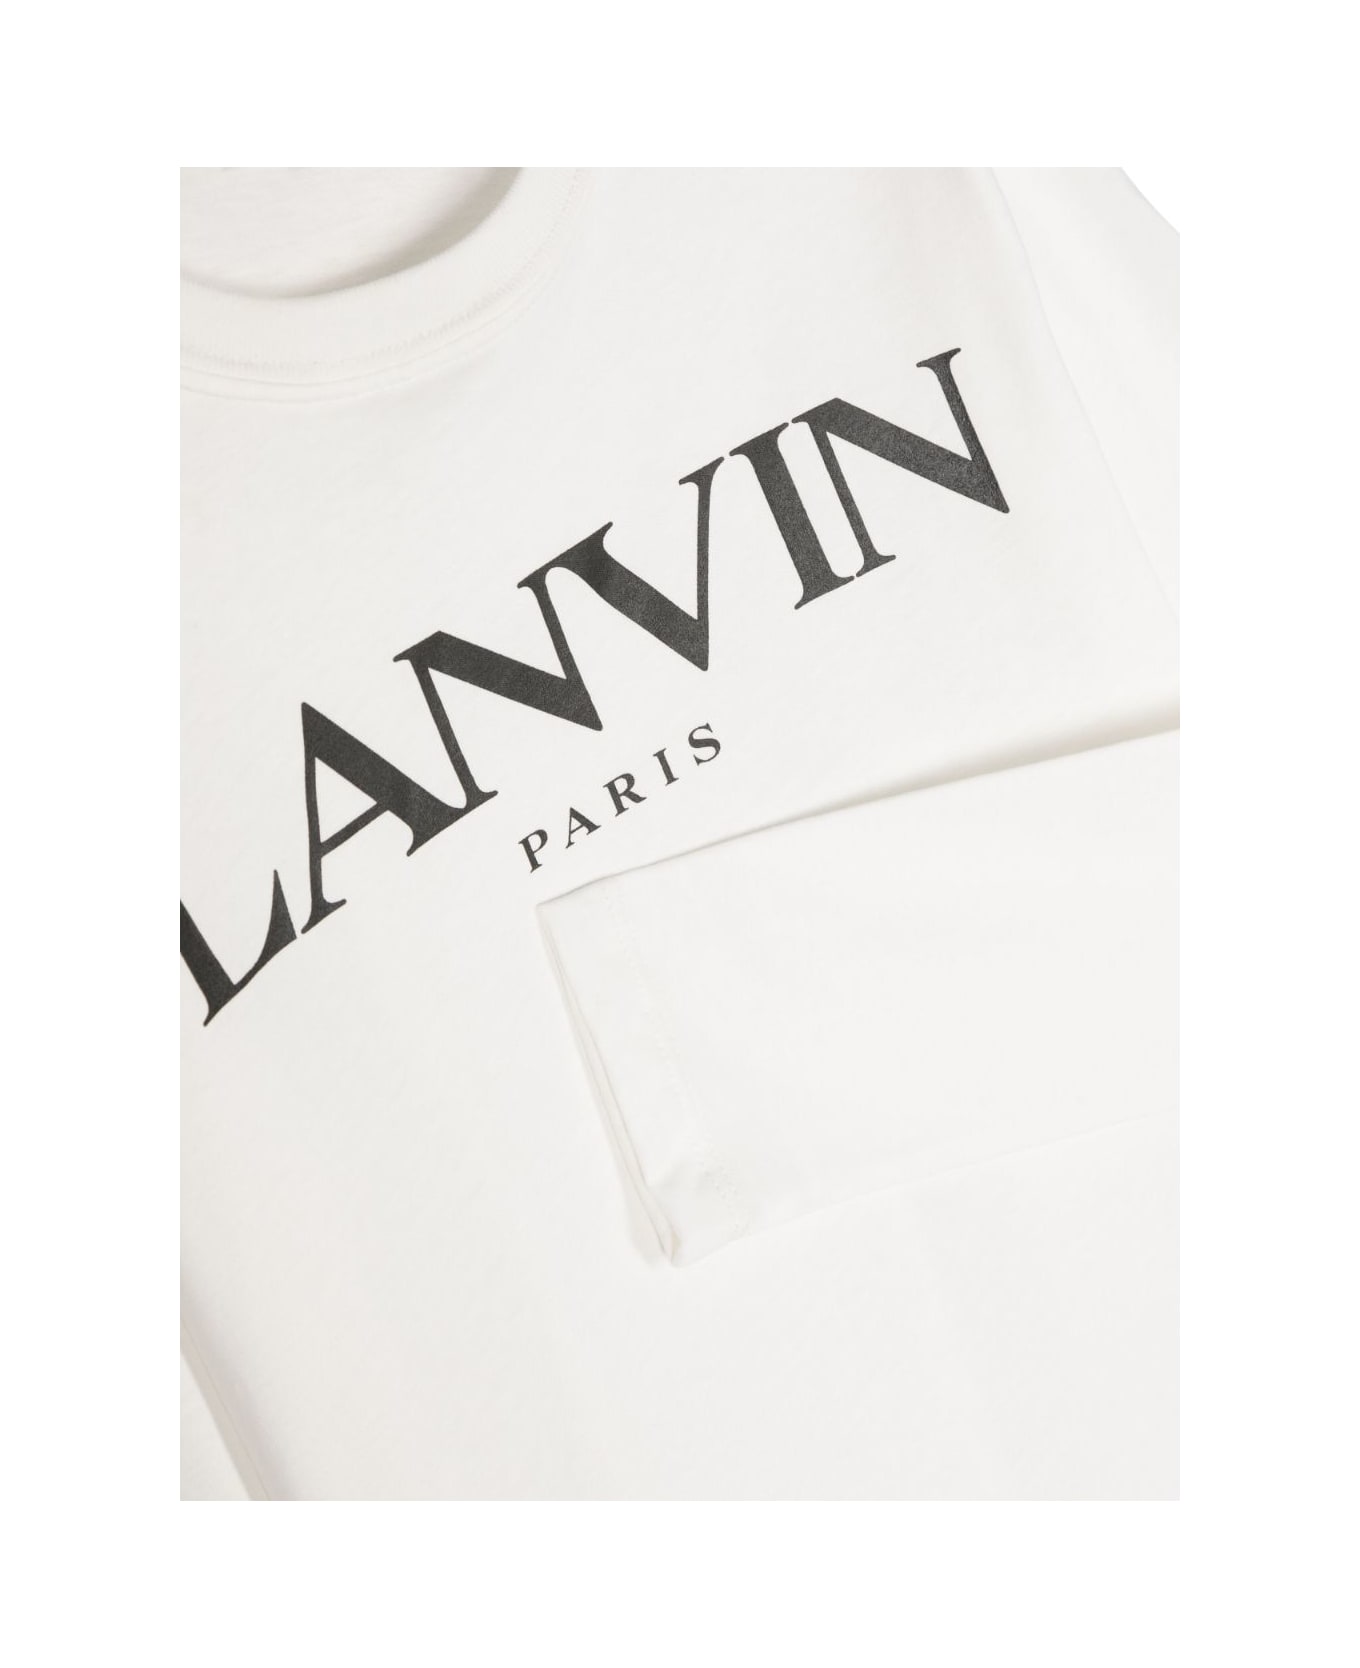 Lanvin T-shirt Bianca In Jersey Di Cotone Bambino - Bianco